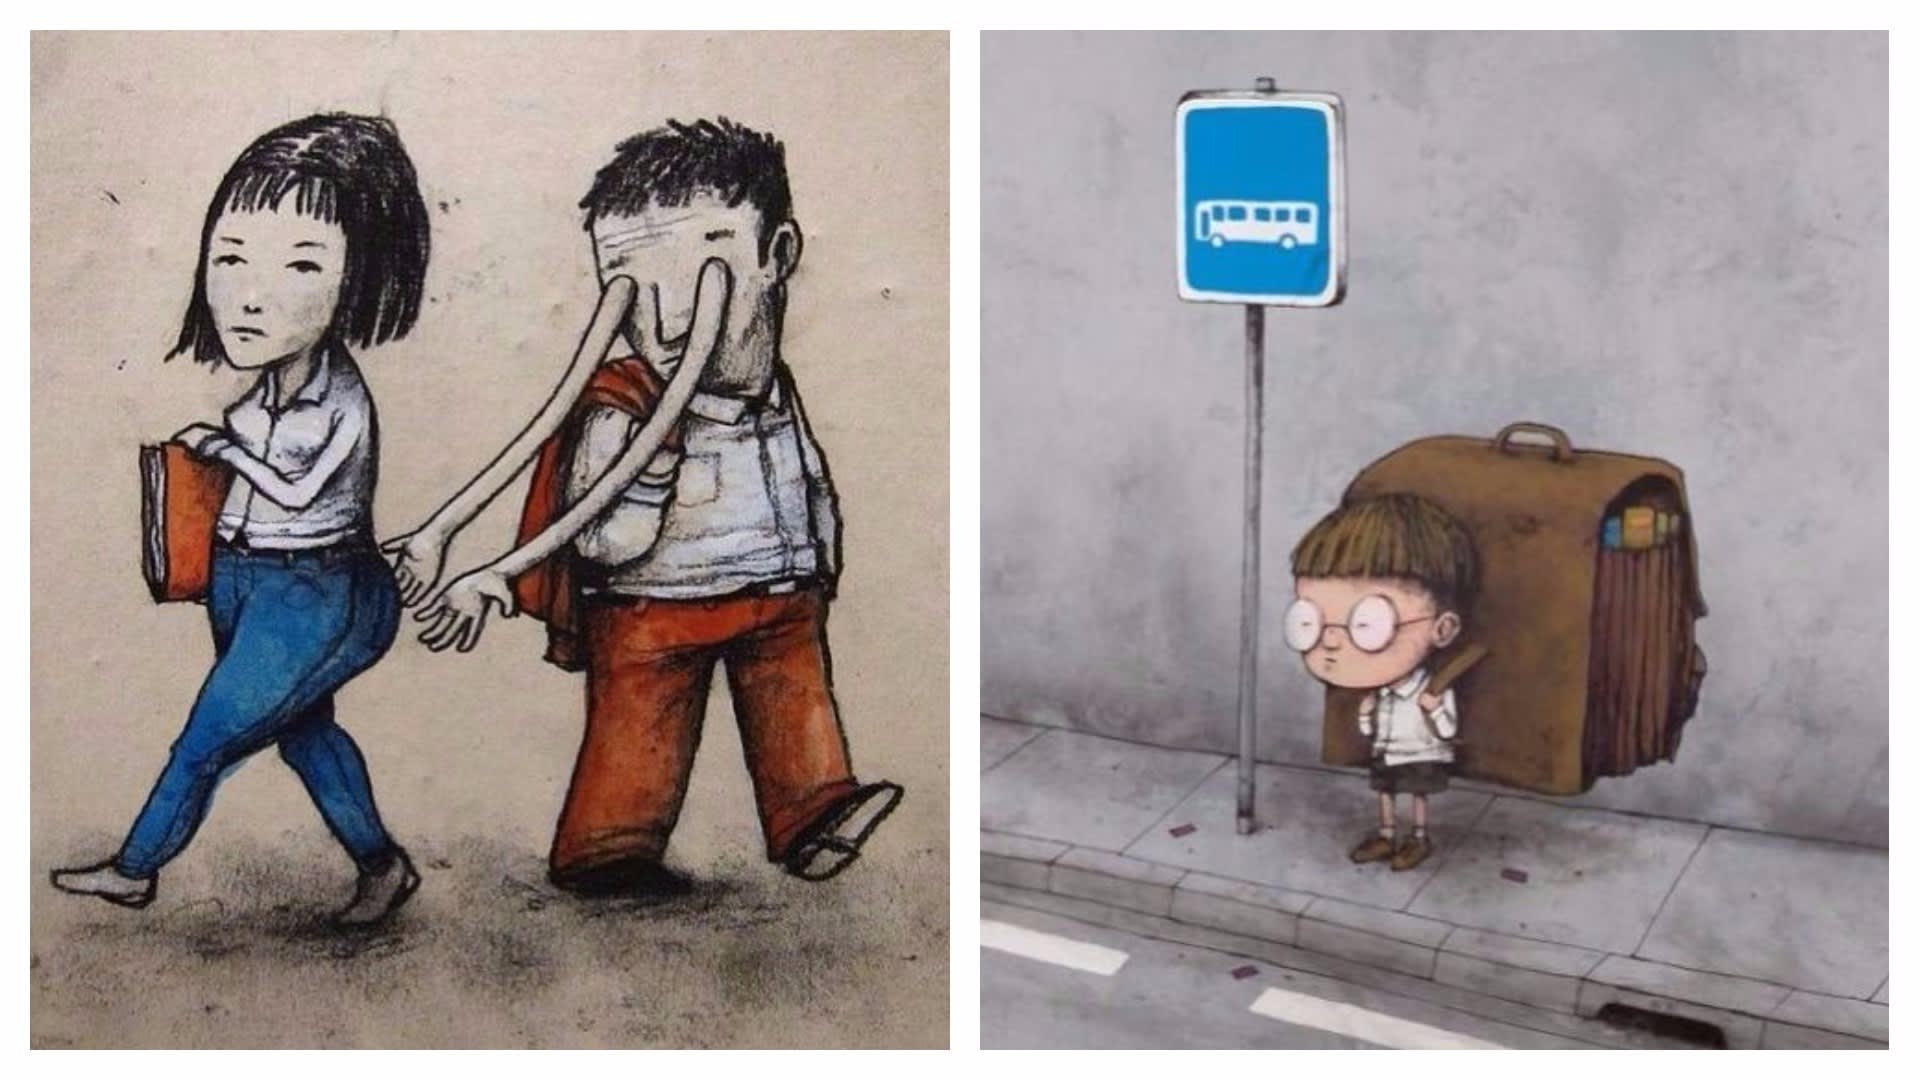 Kruté ilustrace francouzského pouličního umělce Drana